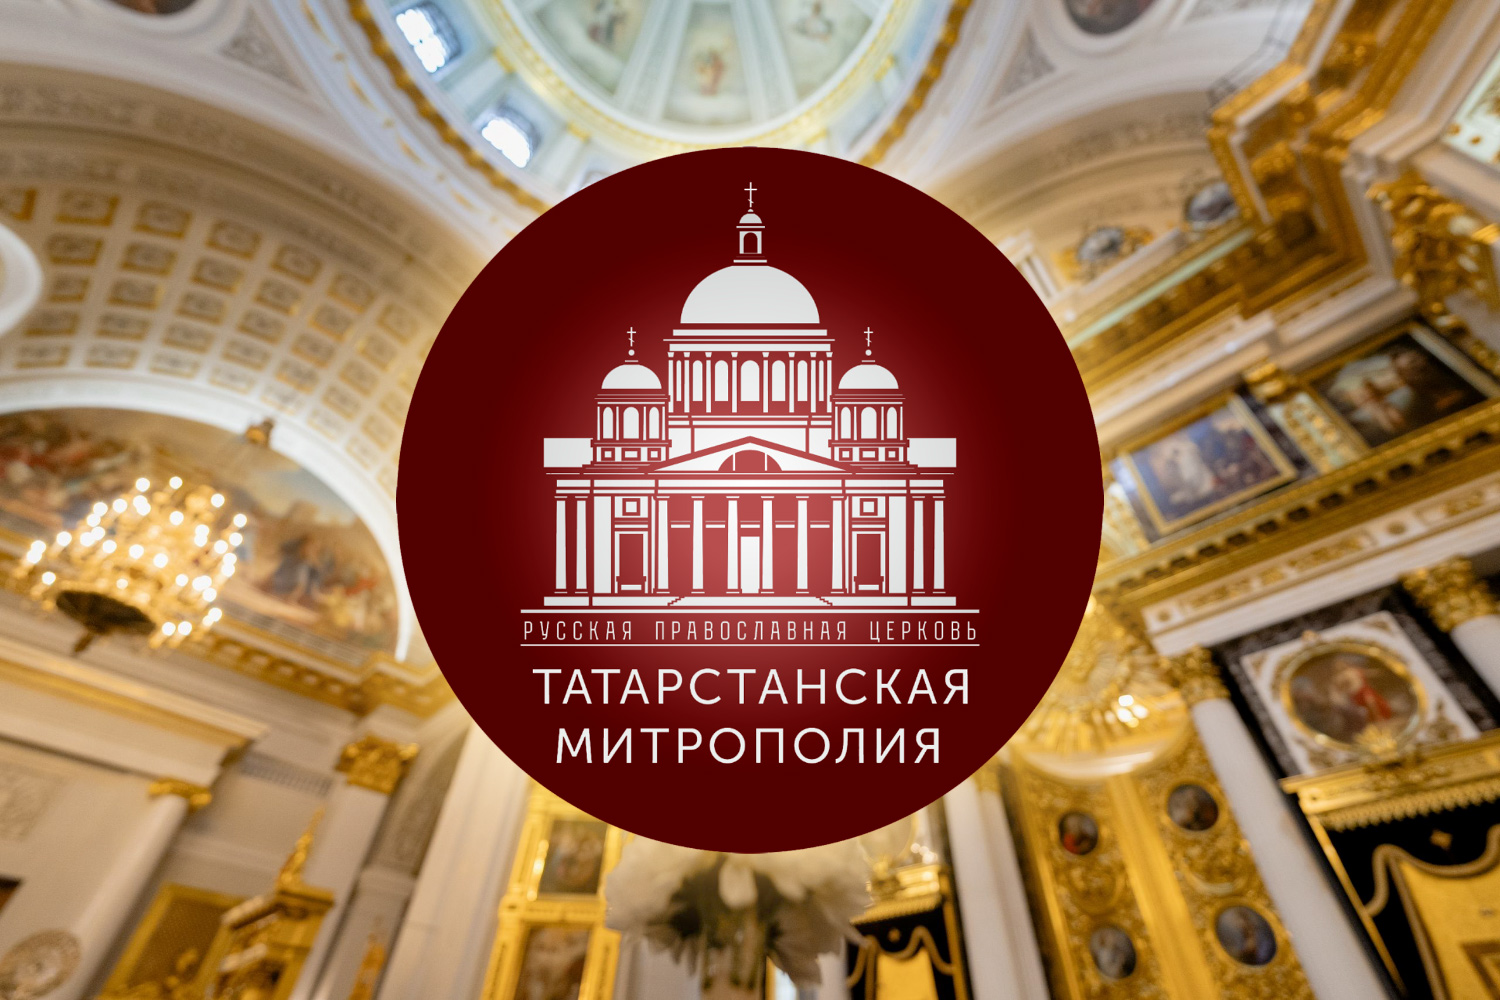 Утверждено решение об извержении из сана трех запрещенных клириков Казанской епархии